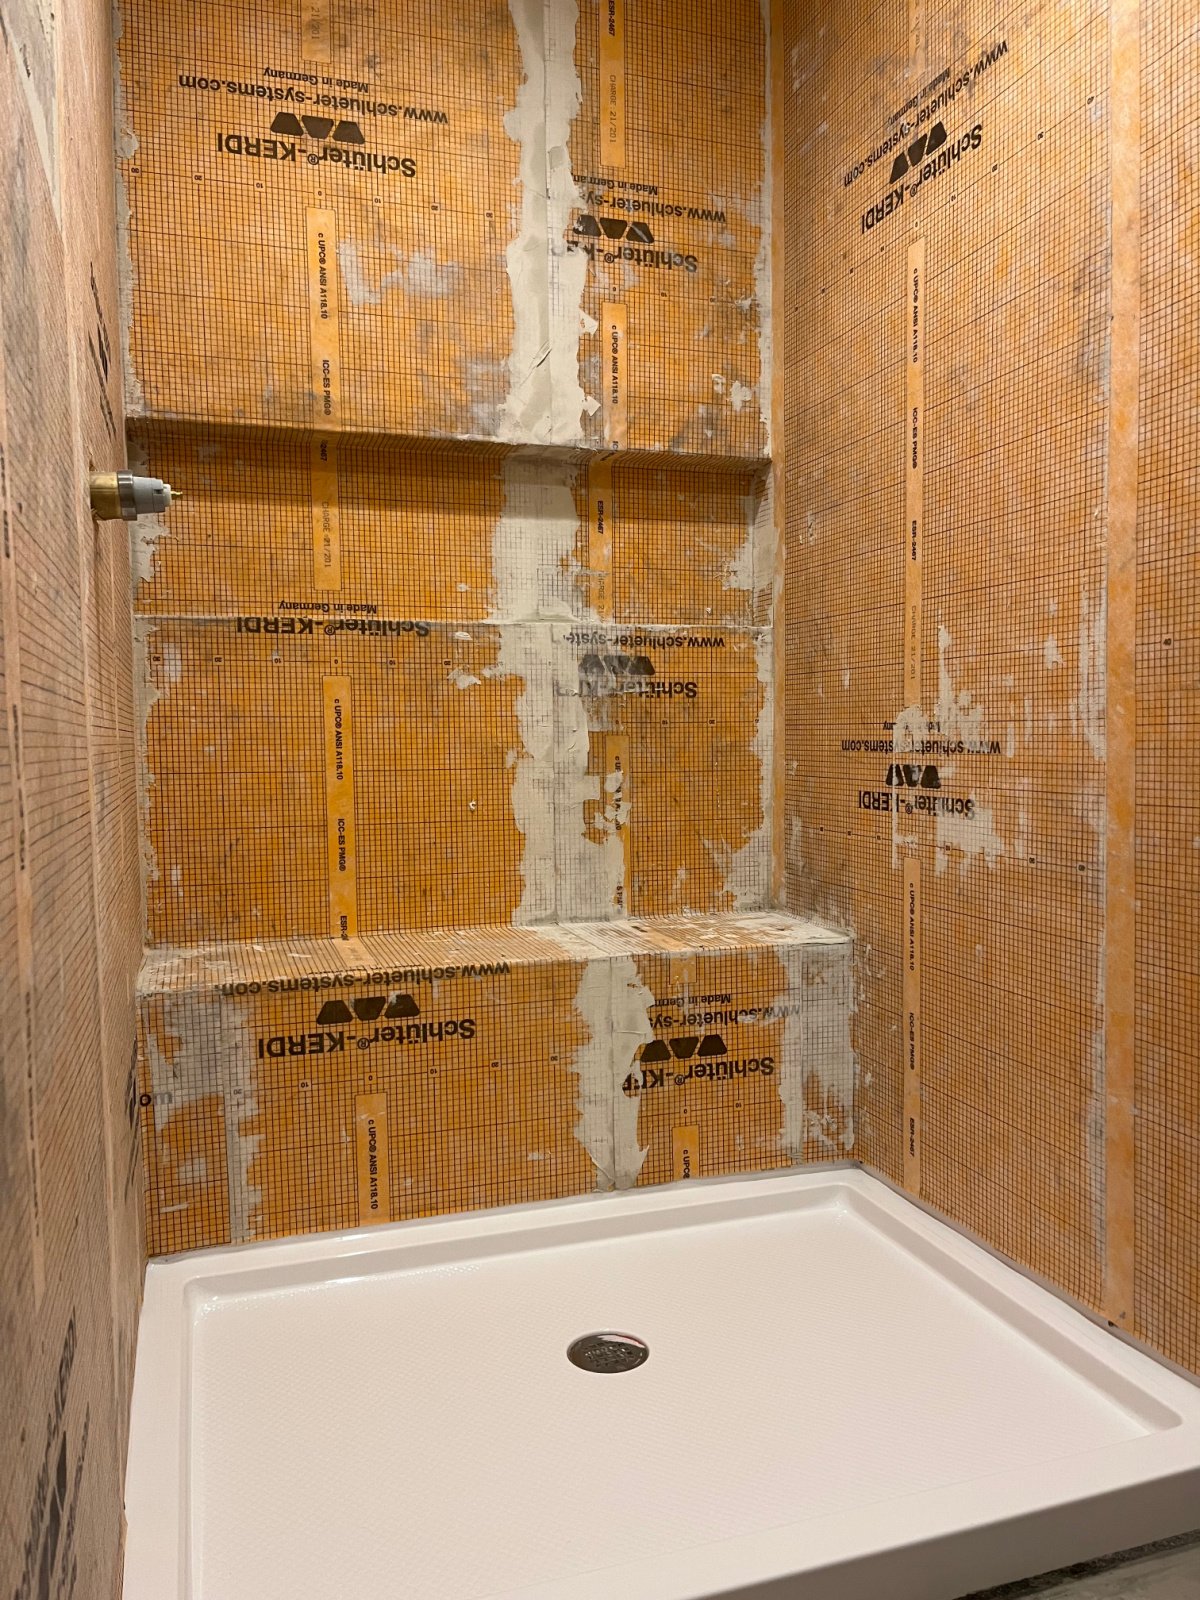 Schluter Kerdi applied to shower walls around shower pan